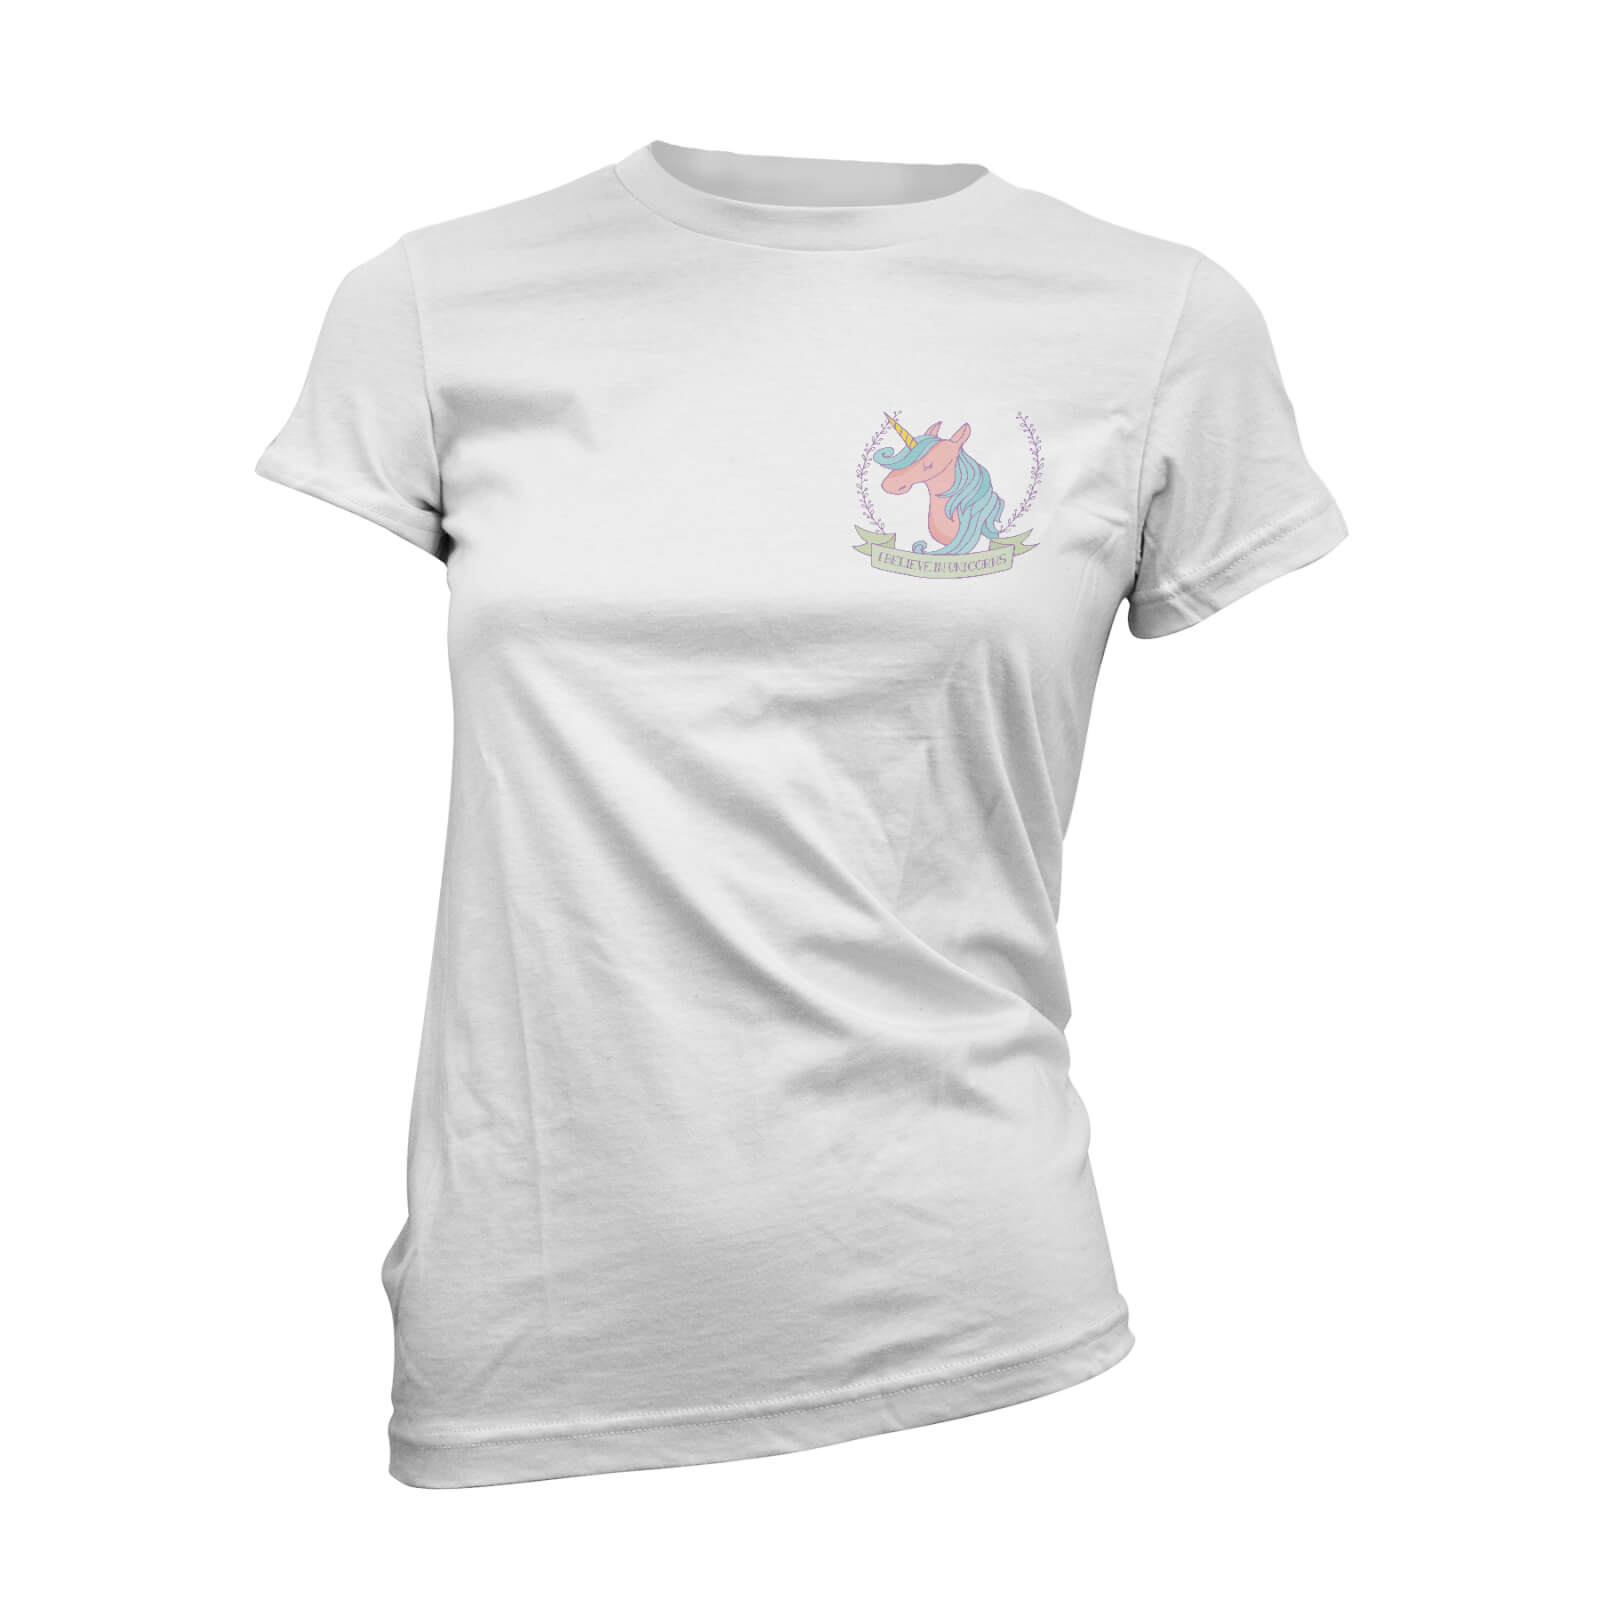 I Believe In Unicorns Pocket Print Women's White T-Shirt - S - White